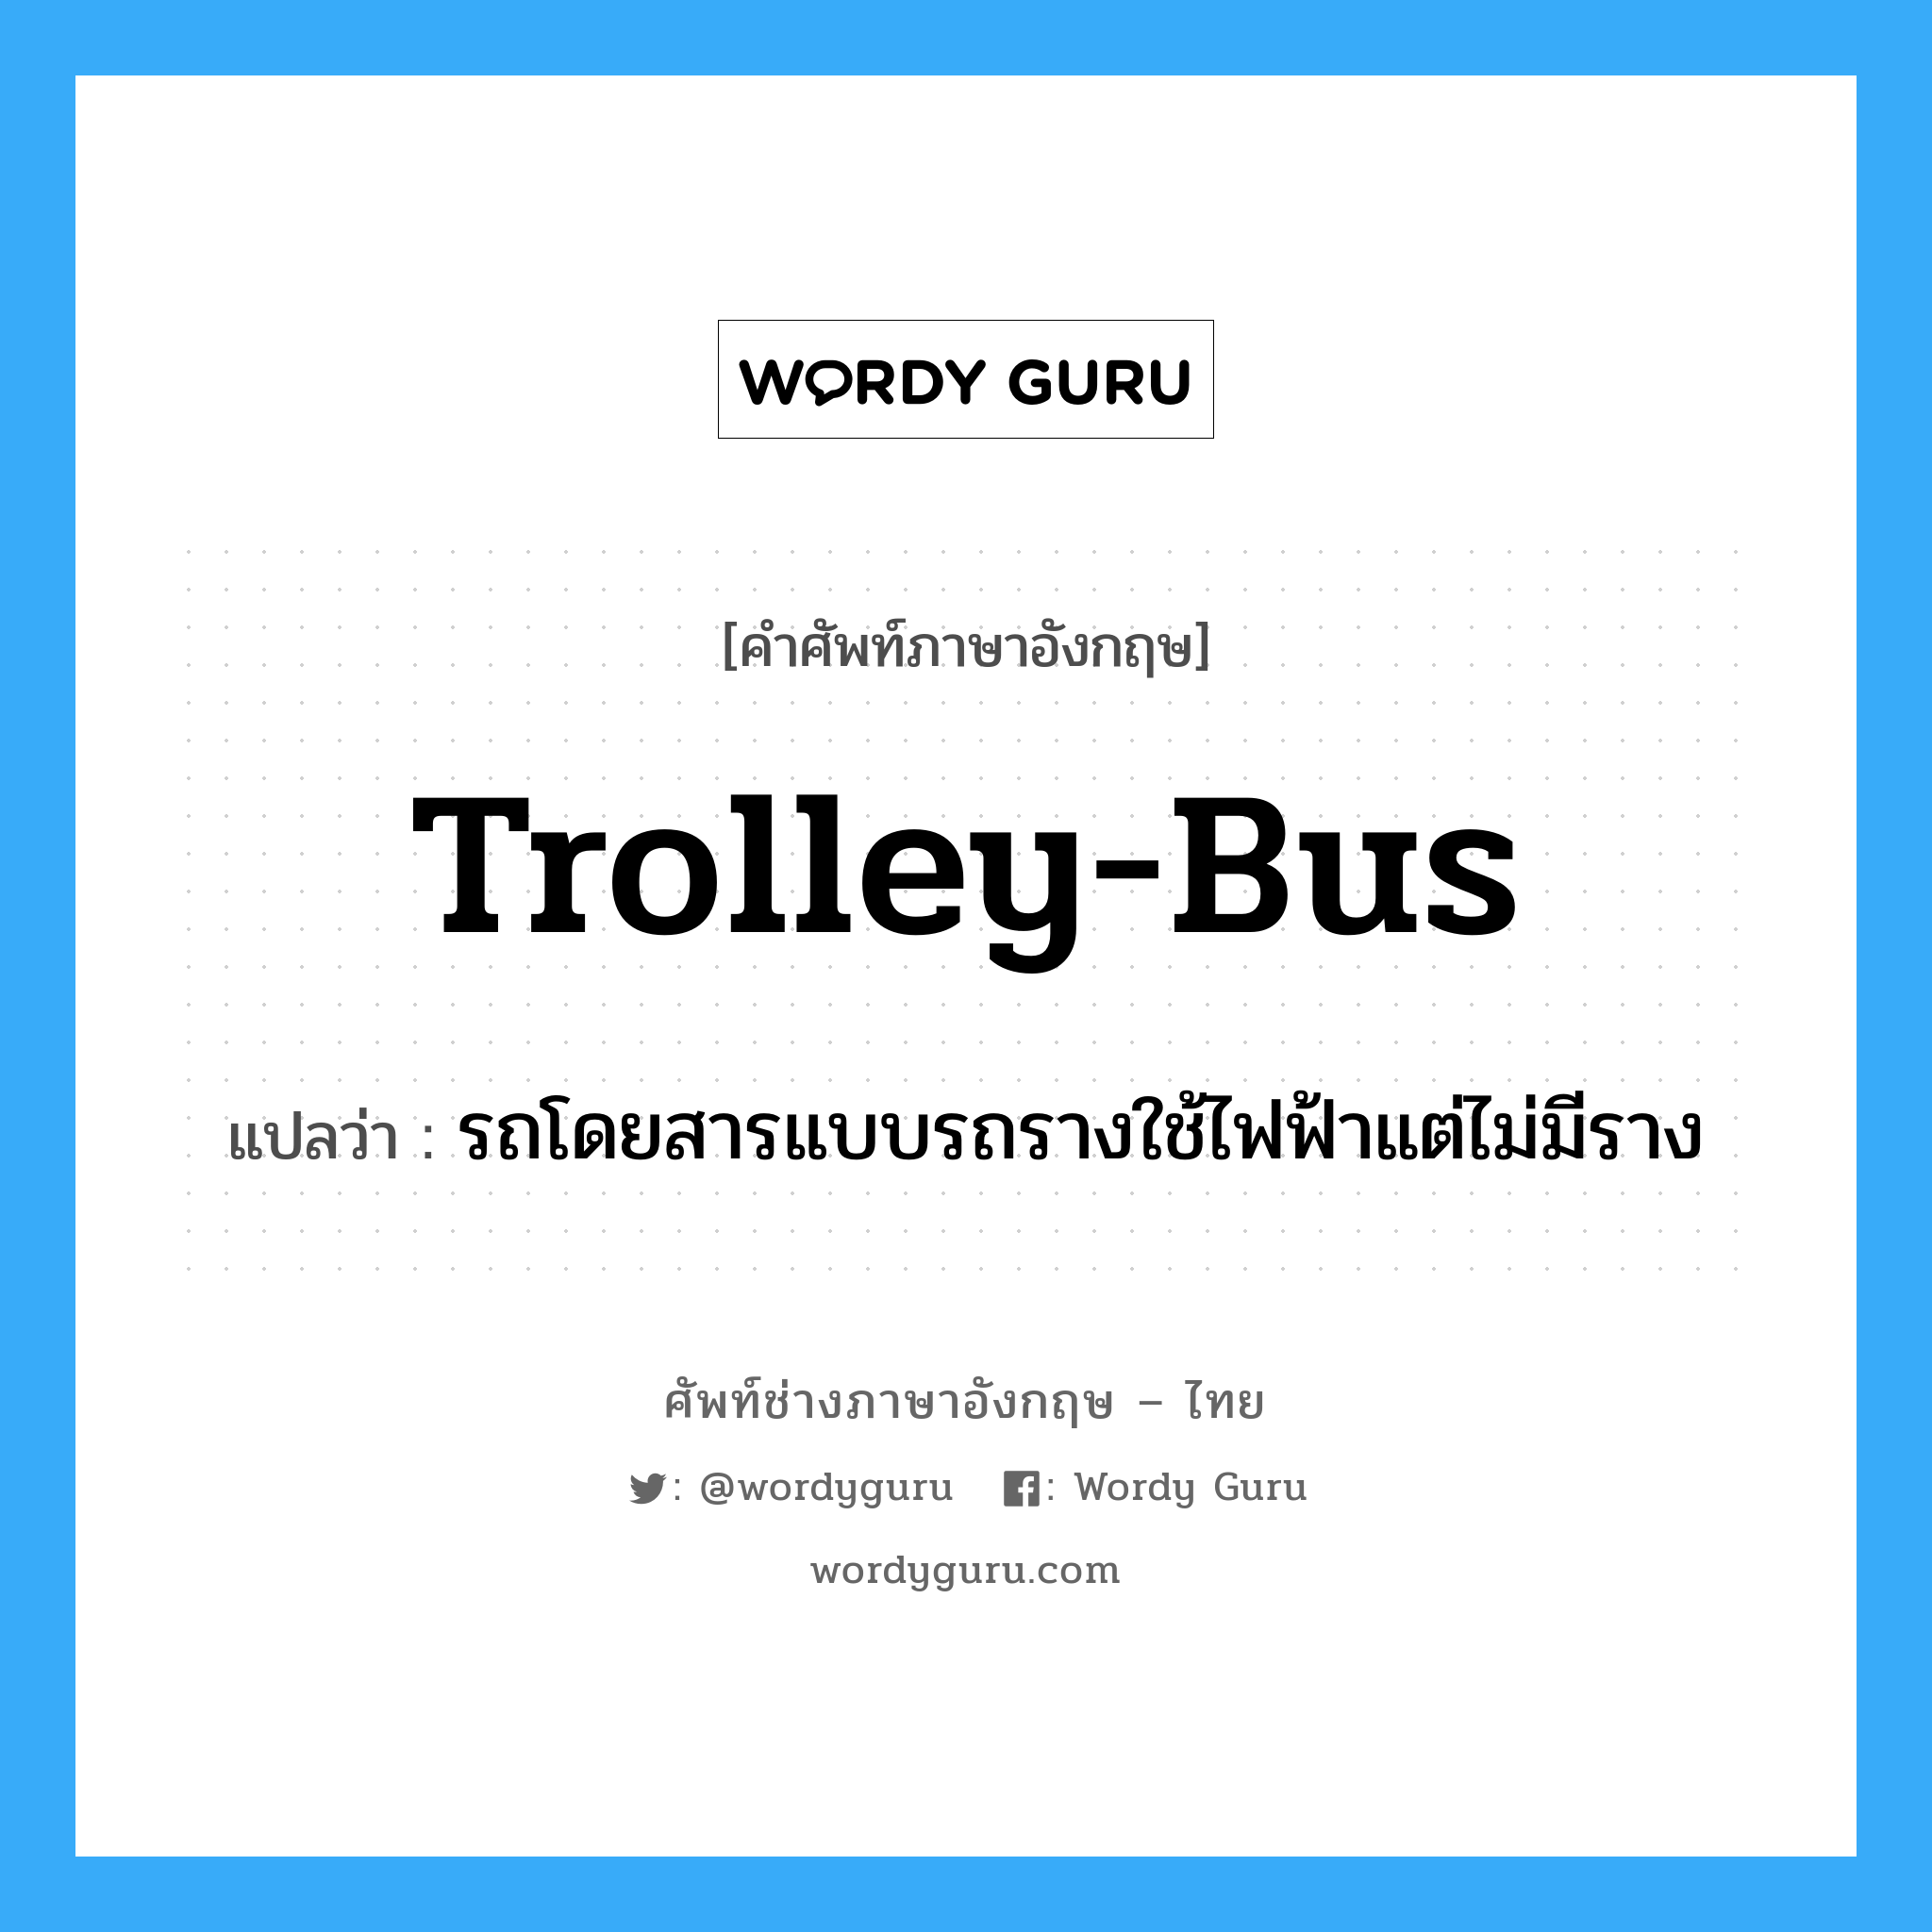 รถโดยสารแบบรถรางใช้ไฟฟ้าแต่ไม่มีราง ภาษาอังกฤษ?, คำศัพท์ช่างภาษาอังกฤษ - ไทย รถโดยสารแบบรถรางใช้ไฟฟ้าแต่ไม่มีราง คำศัพท์ภาษาอังกฤษ รถโดยสารแบบรถรางใช้ไฟฟ้าแต่ไม่มีราง แปลว่า trolley-bus